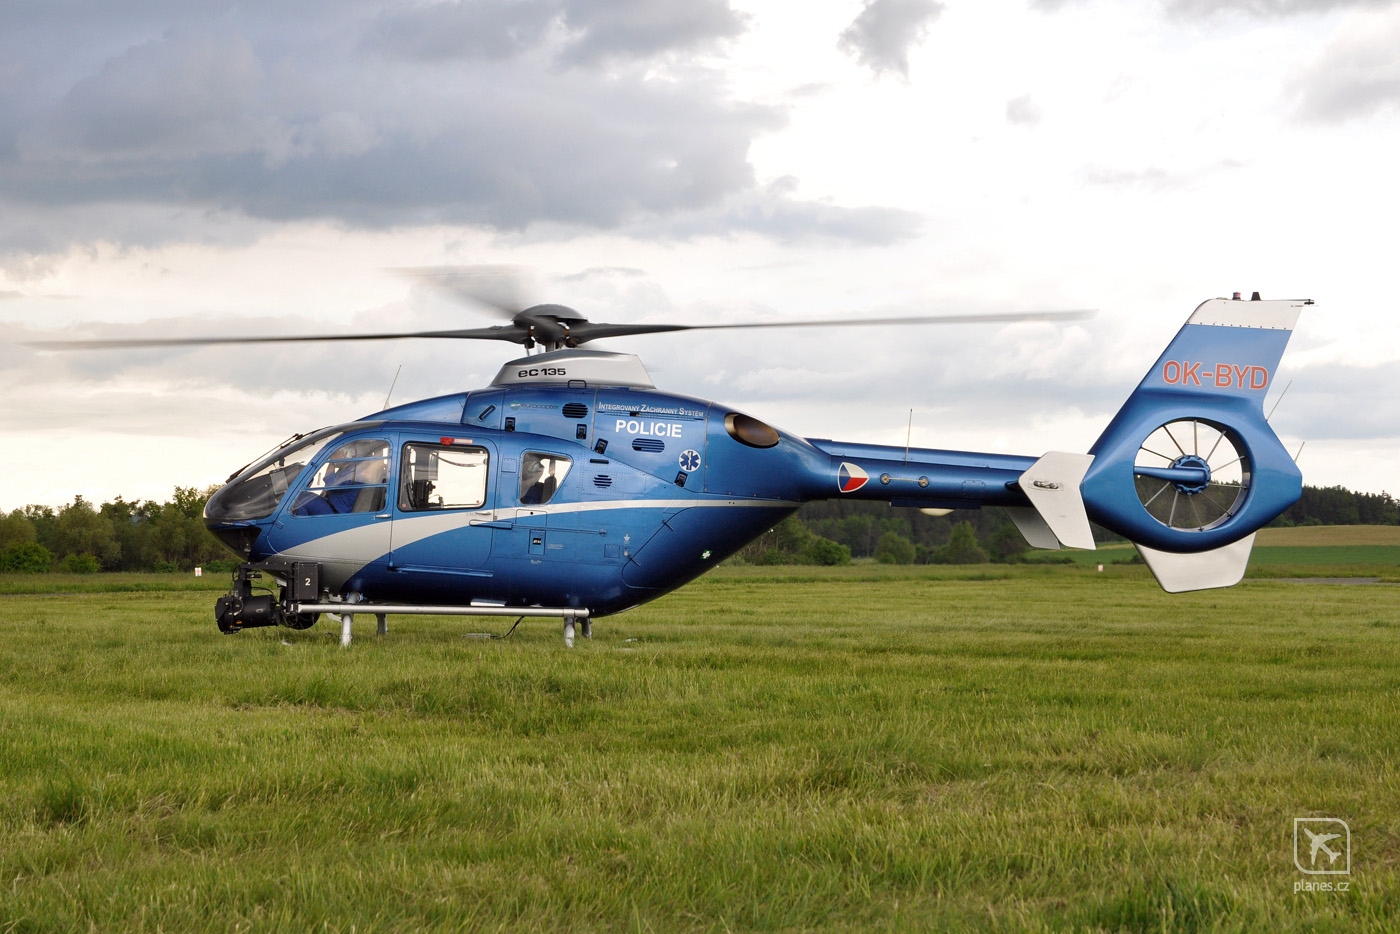 eurocopter-ec135t2-ok-byd-policie-cr-pri